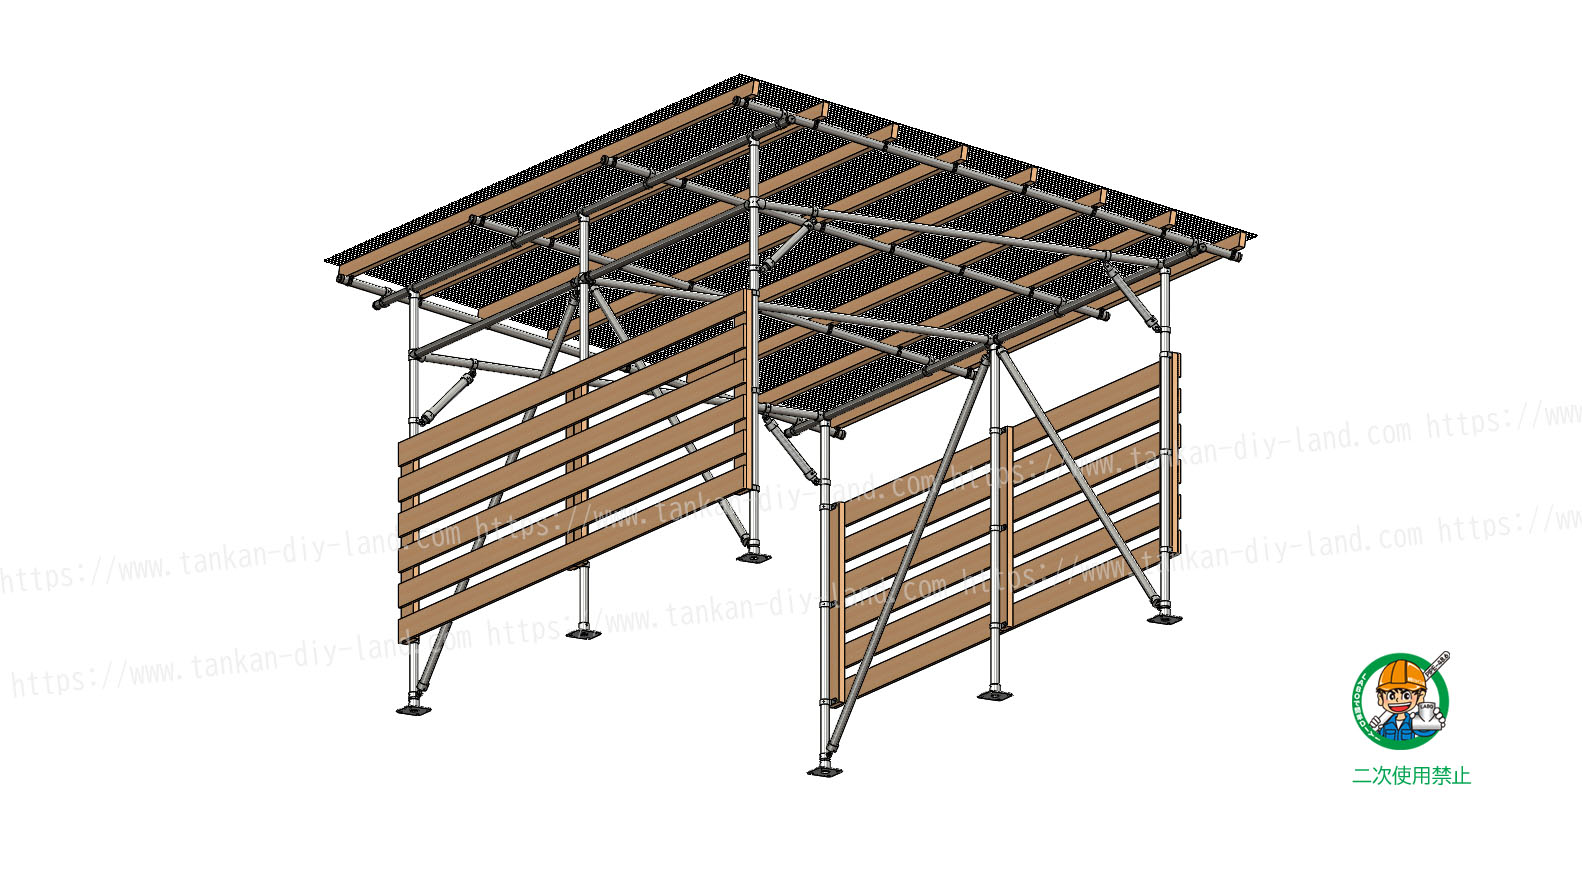 スッキリデザインのｌａｂｏ金具で 簡単 に作る 片流れ屋根の カーポート 小屋 6 単管パイプで作る 単管パイプのdiy 向け 技術者向けの情報なら単管diyランド